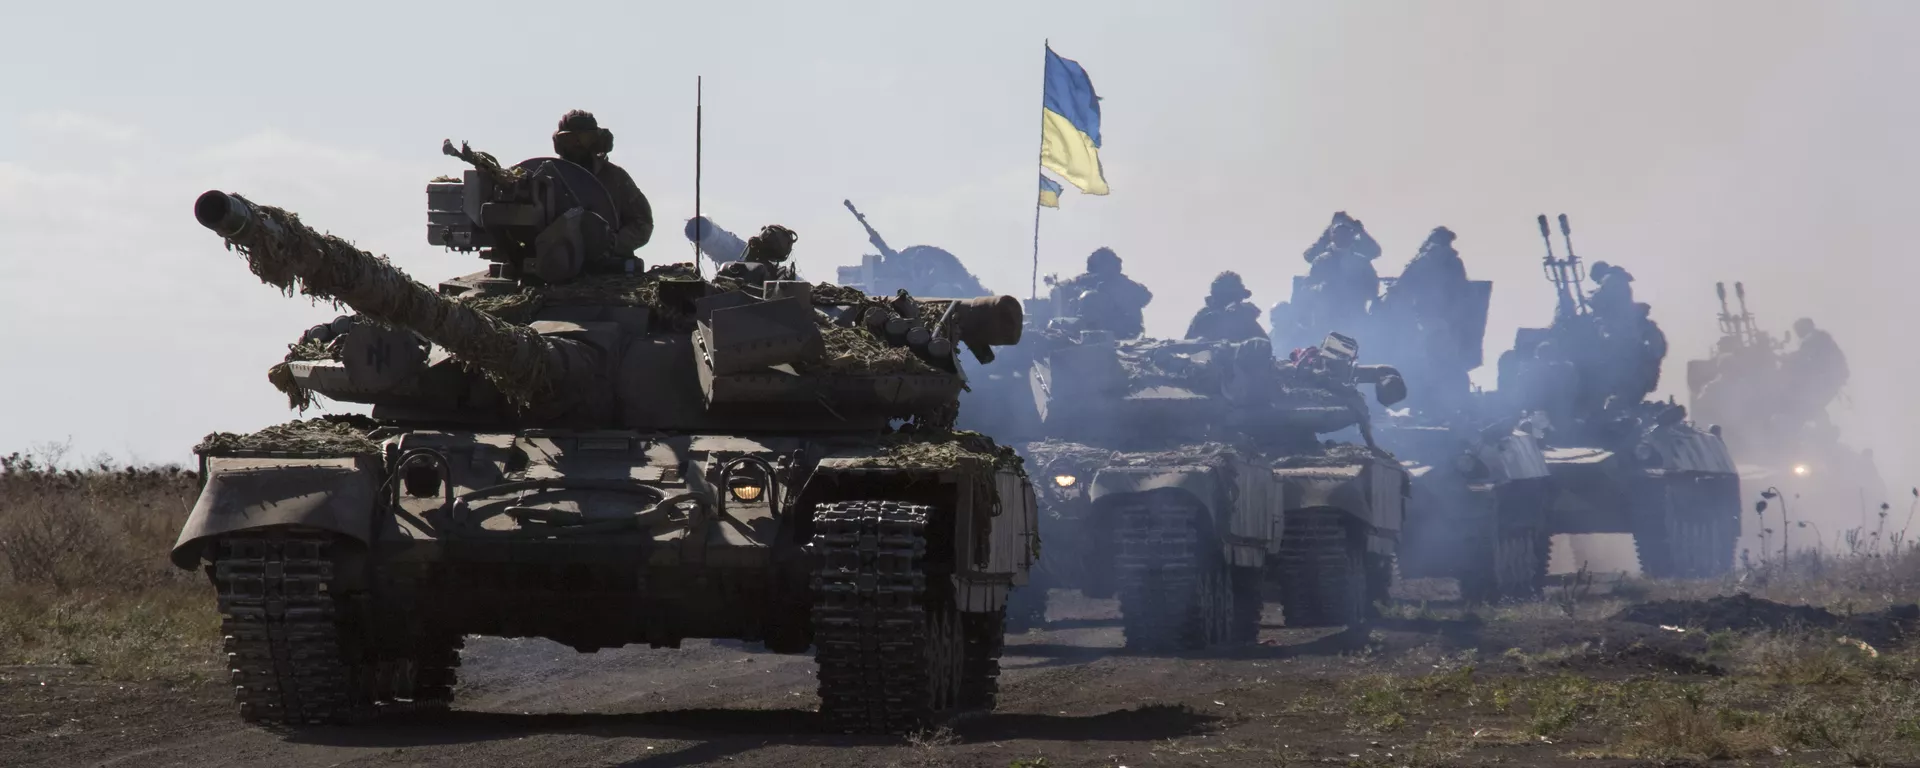 Los tanques ucranianos cerca de Donetsk (archivo) - Sputnik Mundo, 1920, 01.02.2023